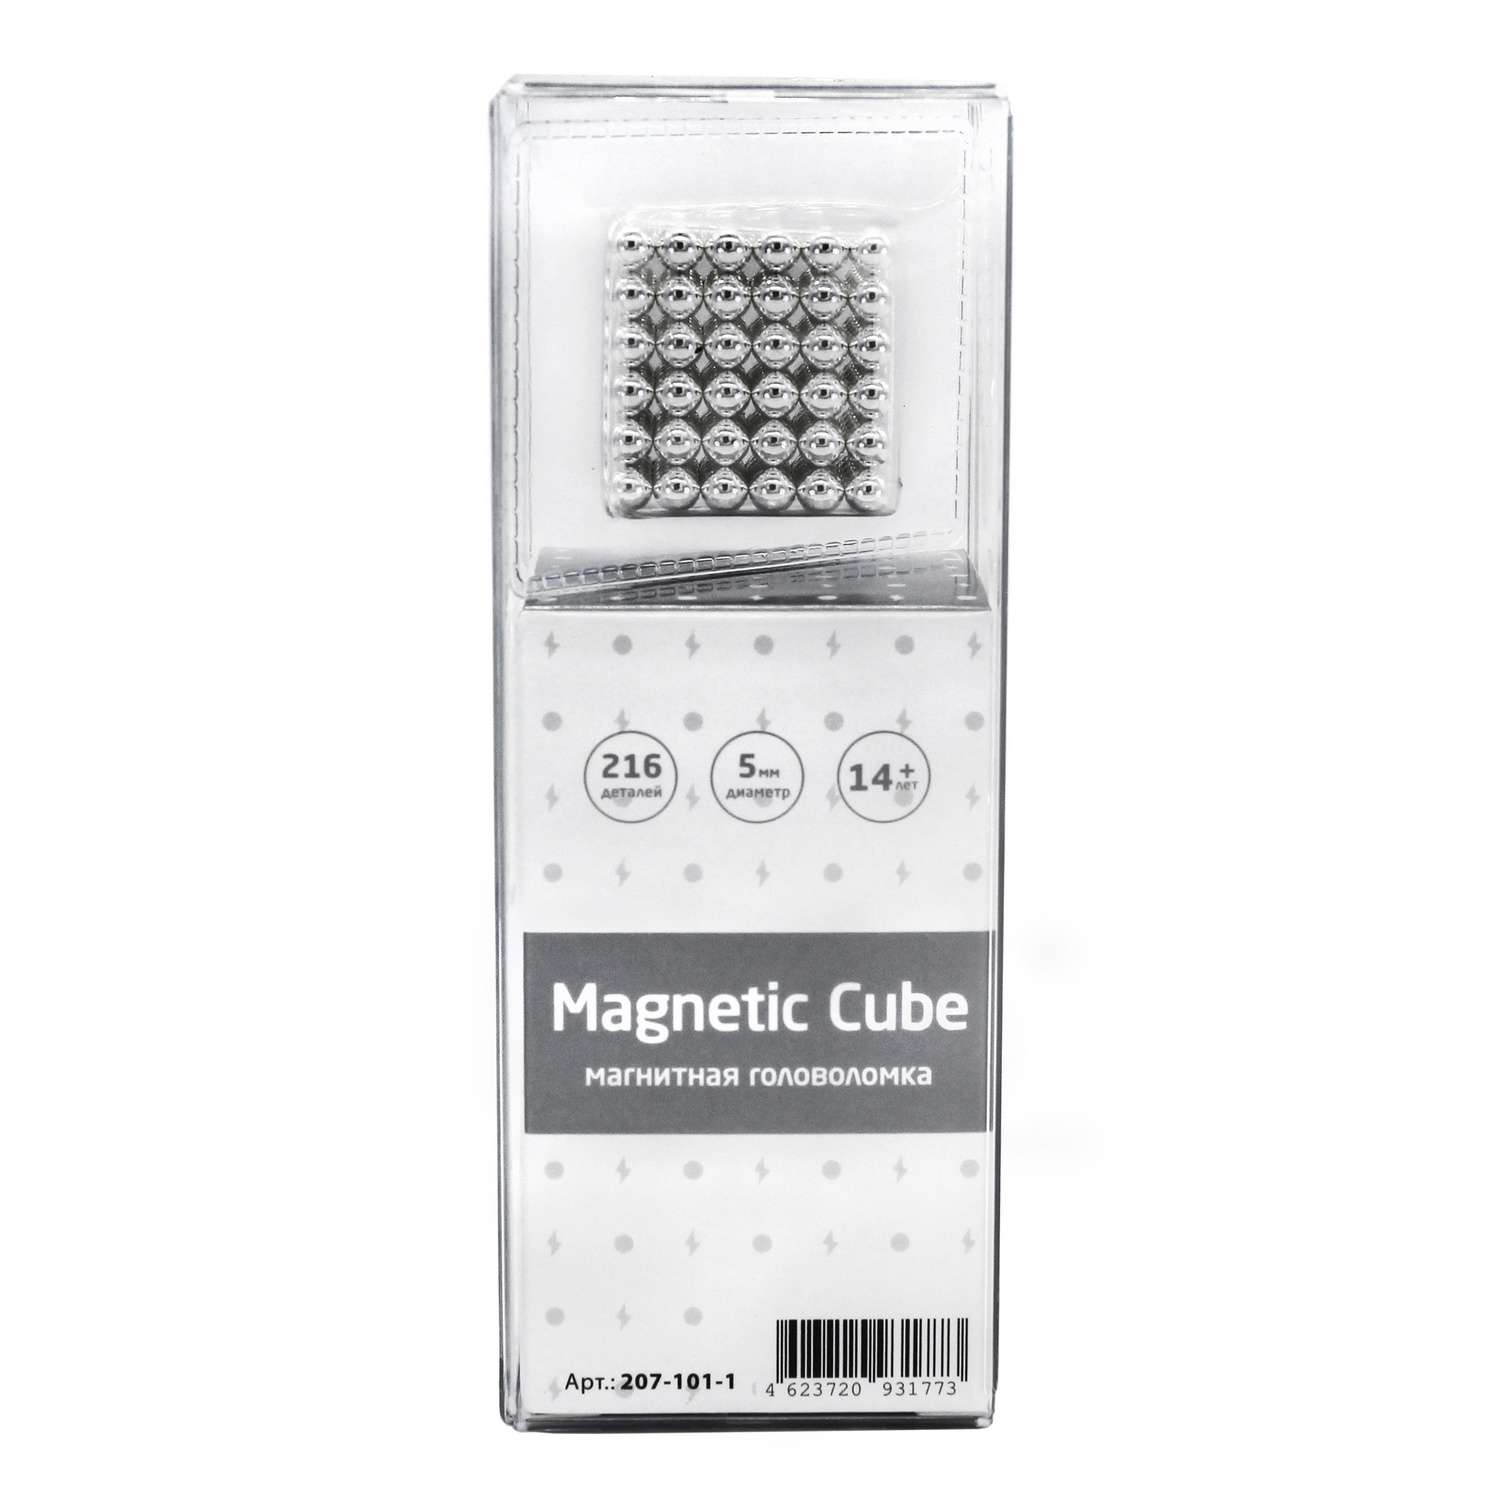 Головоломка магнитная Magnetic Cube стальной неокуб 216 элементов - фото 3